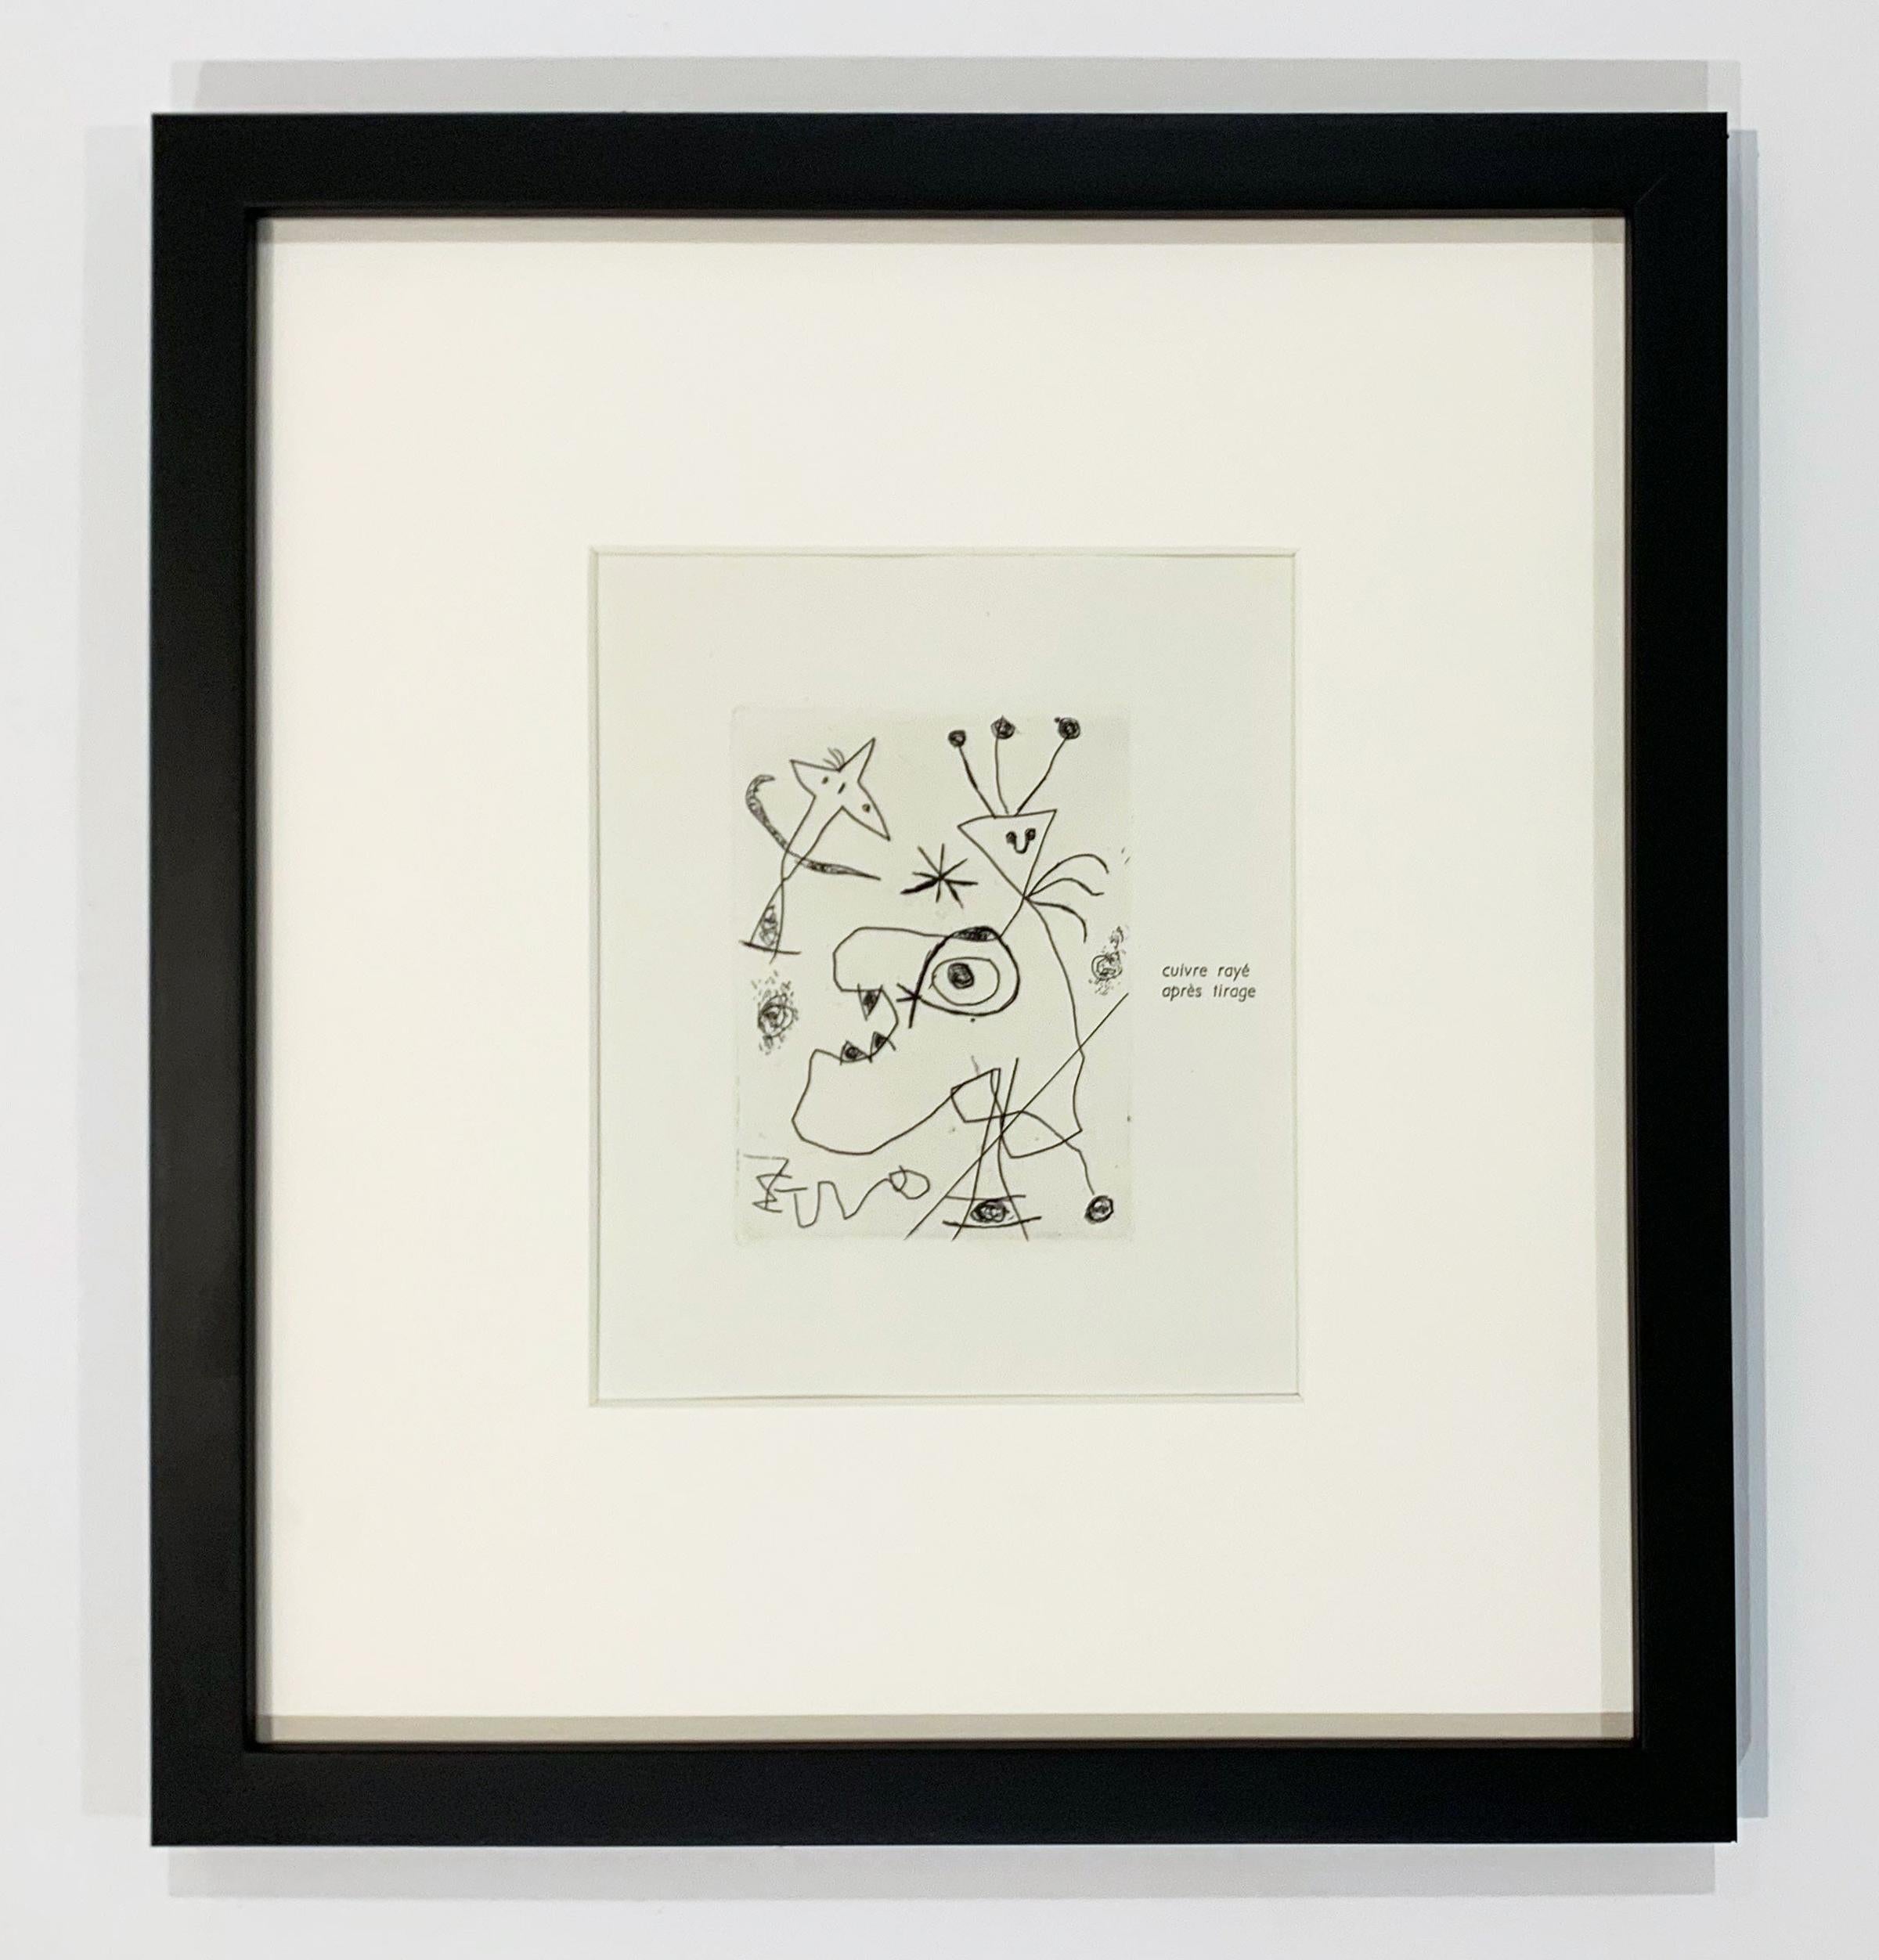 L'Aigrette - Print by Joan Miró